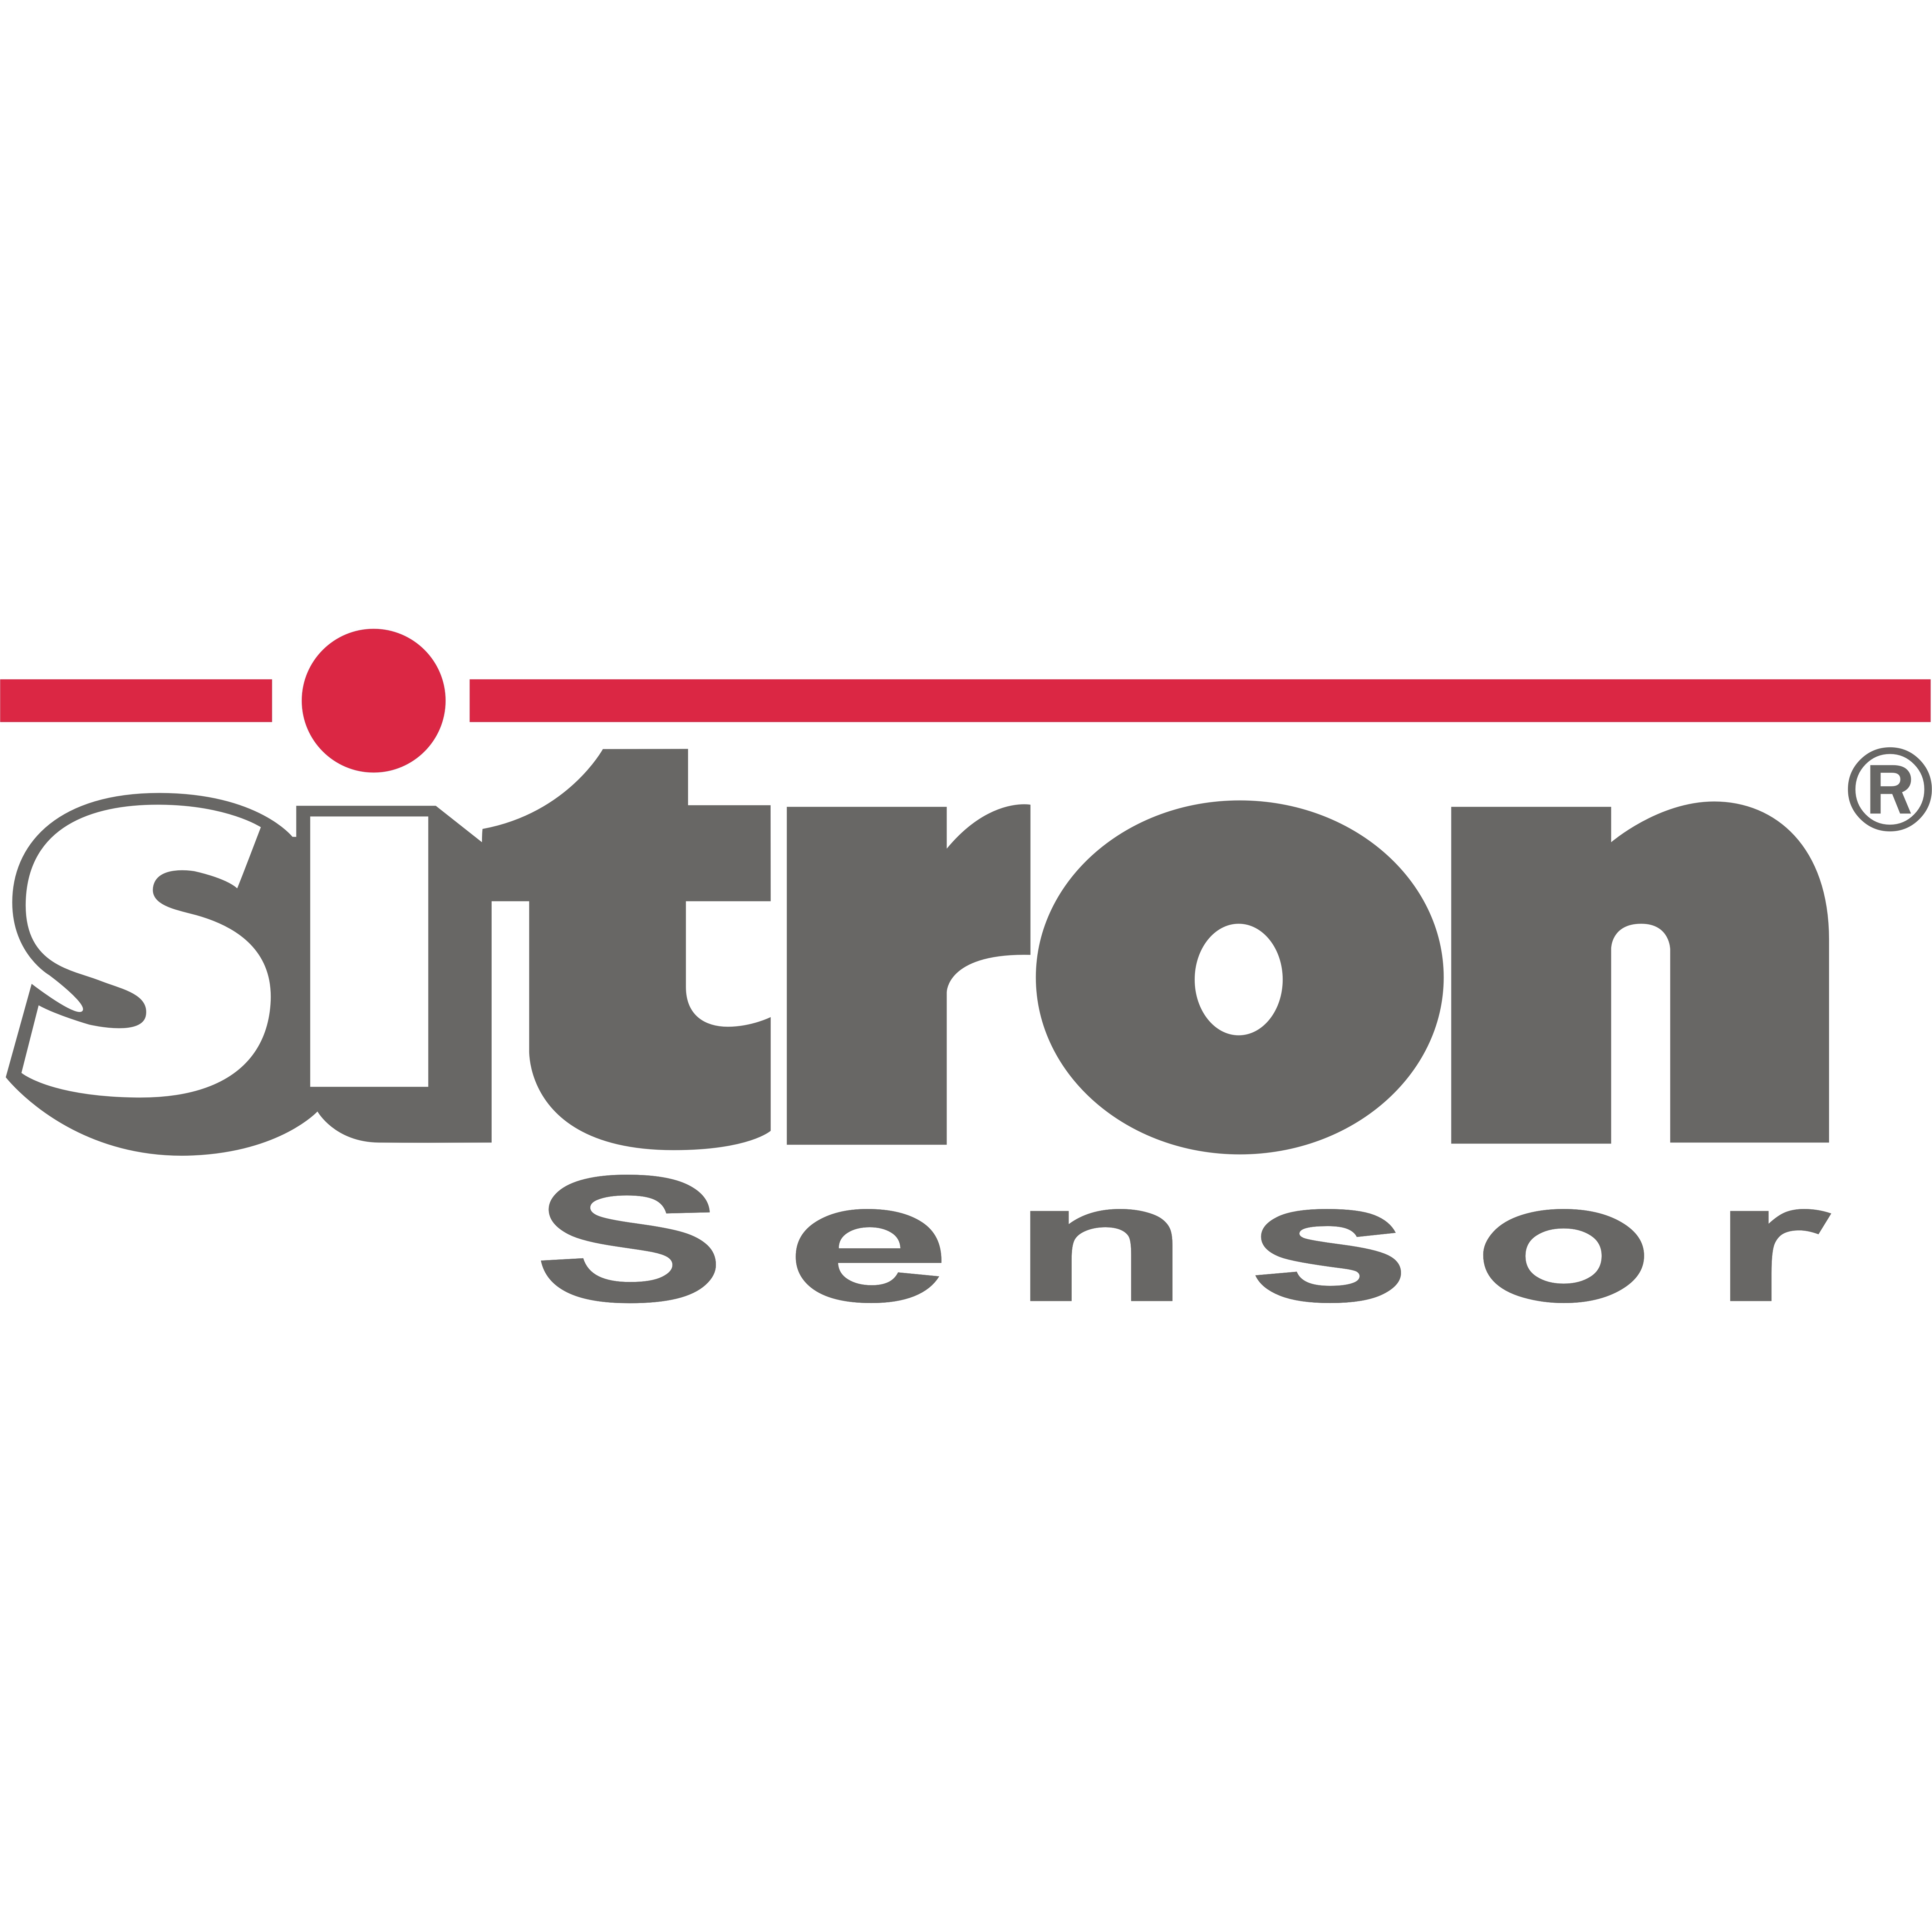 Logo Sitron Sensor GmbH